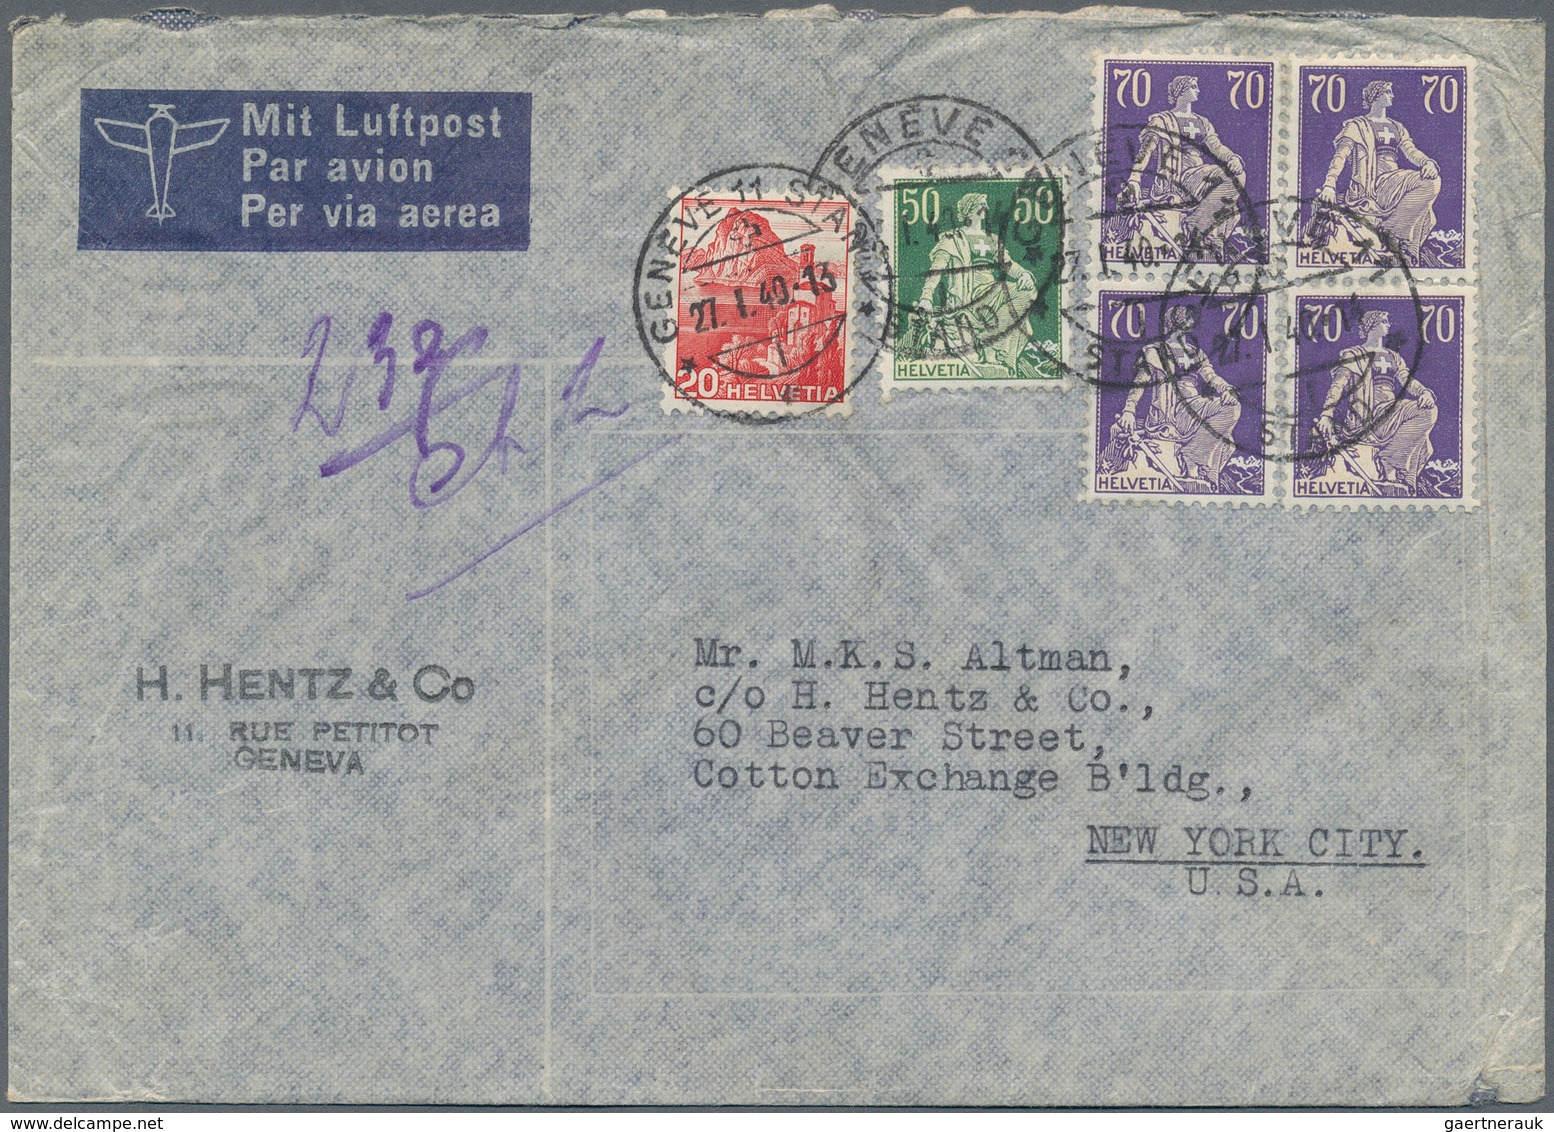 28102 Schweiz: 1940/60(ca.), Sehr schöner Posten von ca. 200 LuPo-Briefen aus einer Schweiz-USA Korrespond